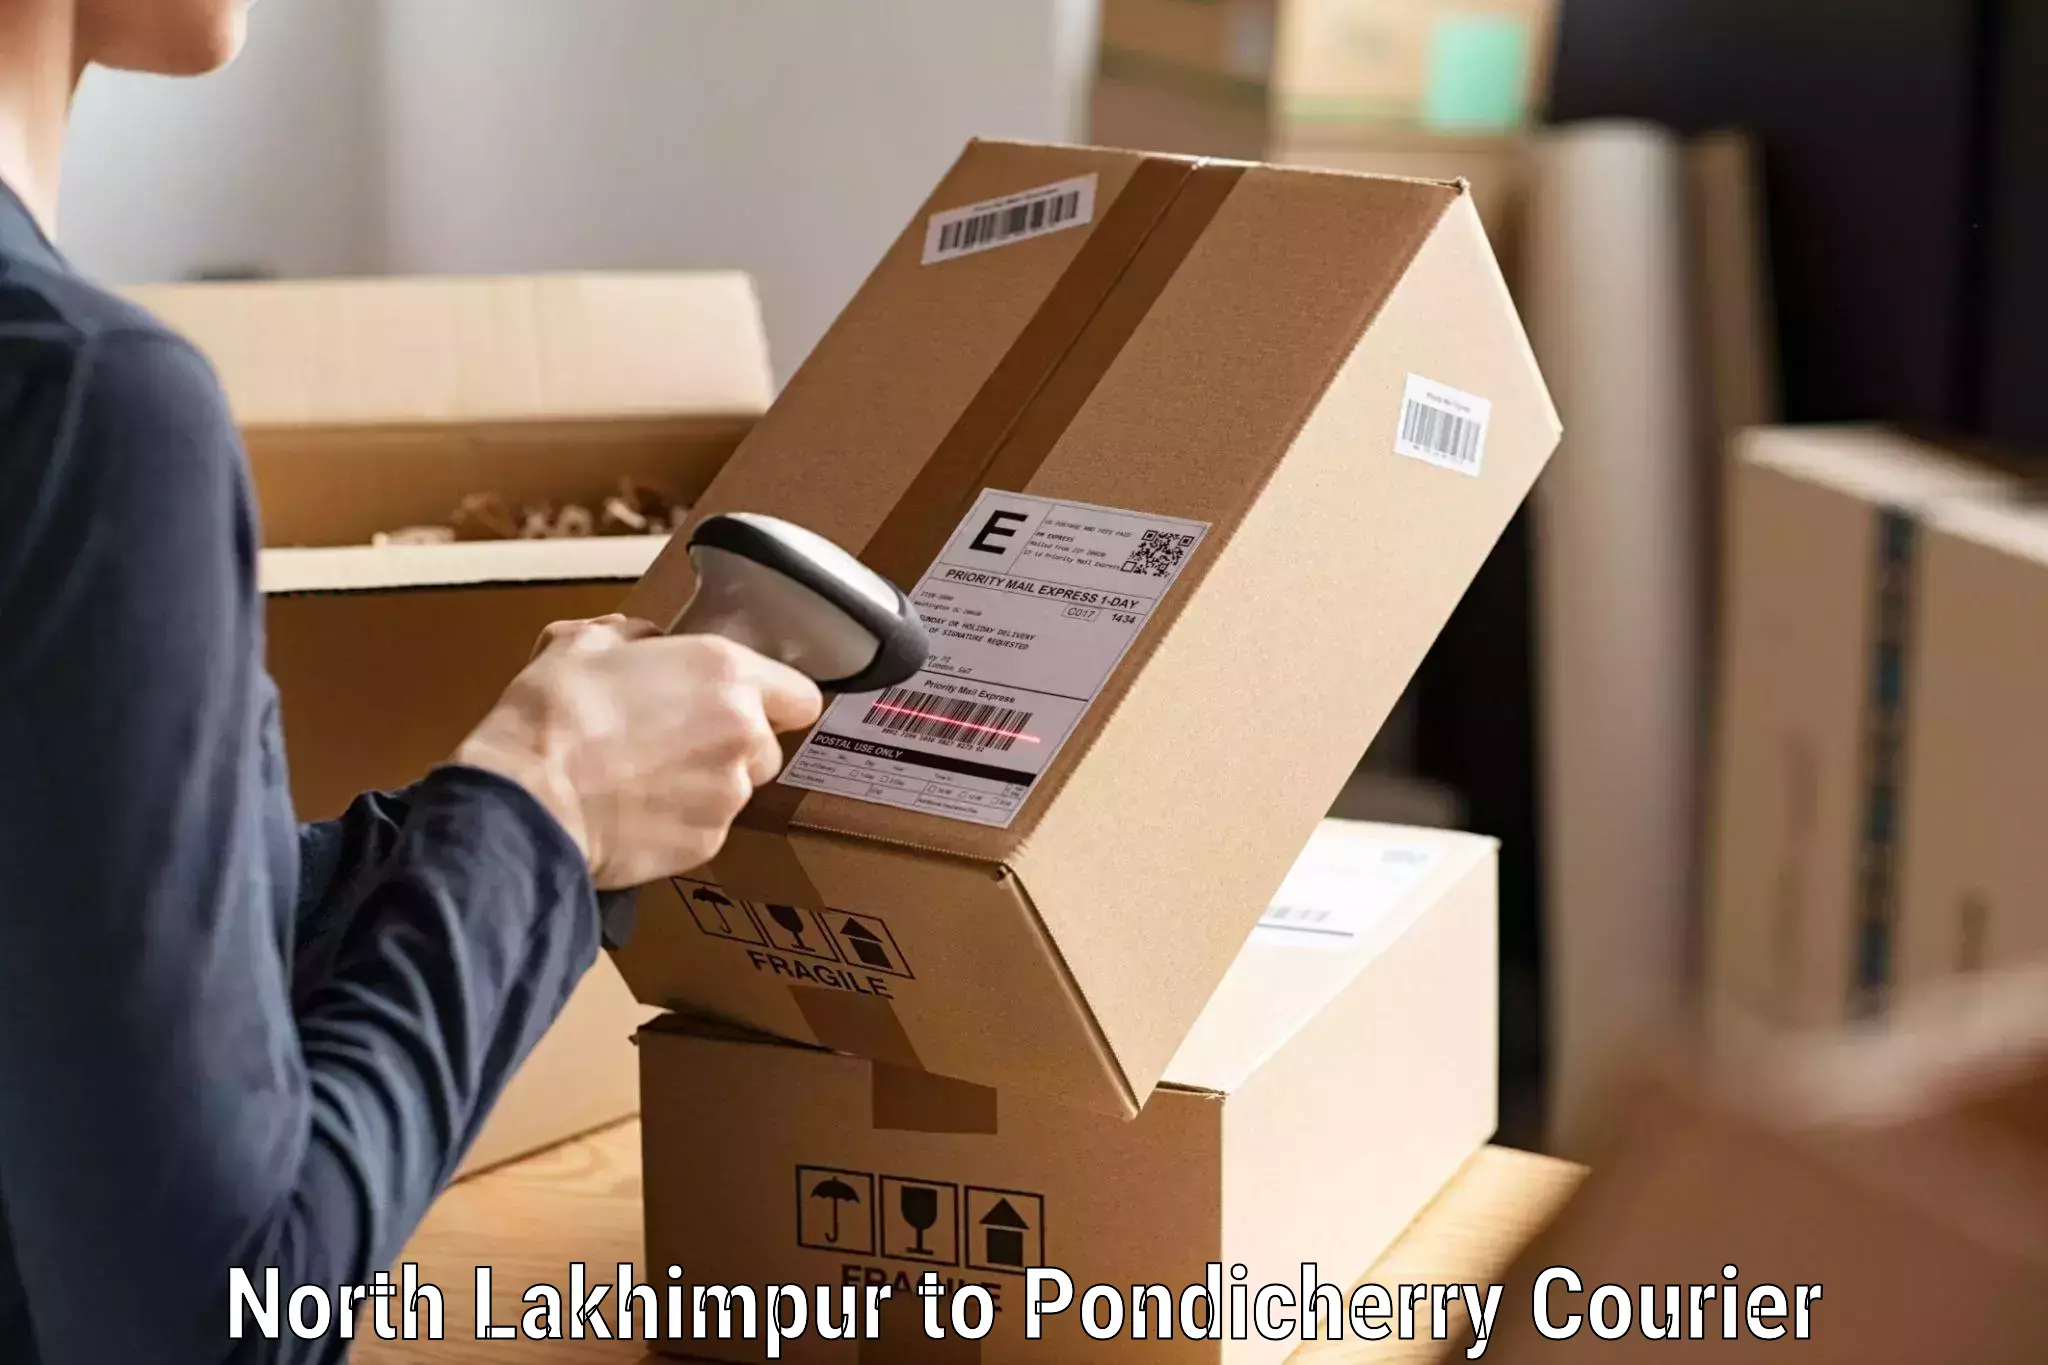 Courier service comparison North Lakhimpur to Pondicherry University